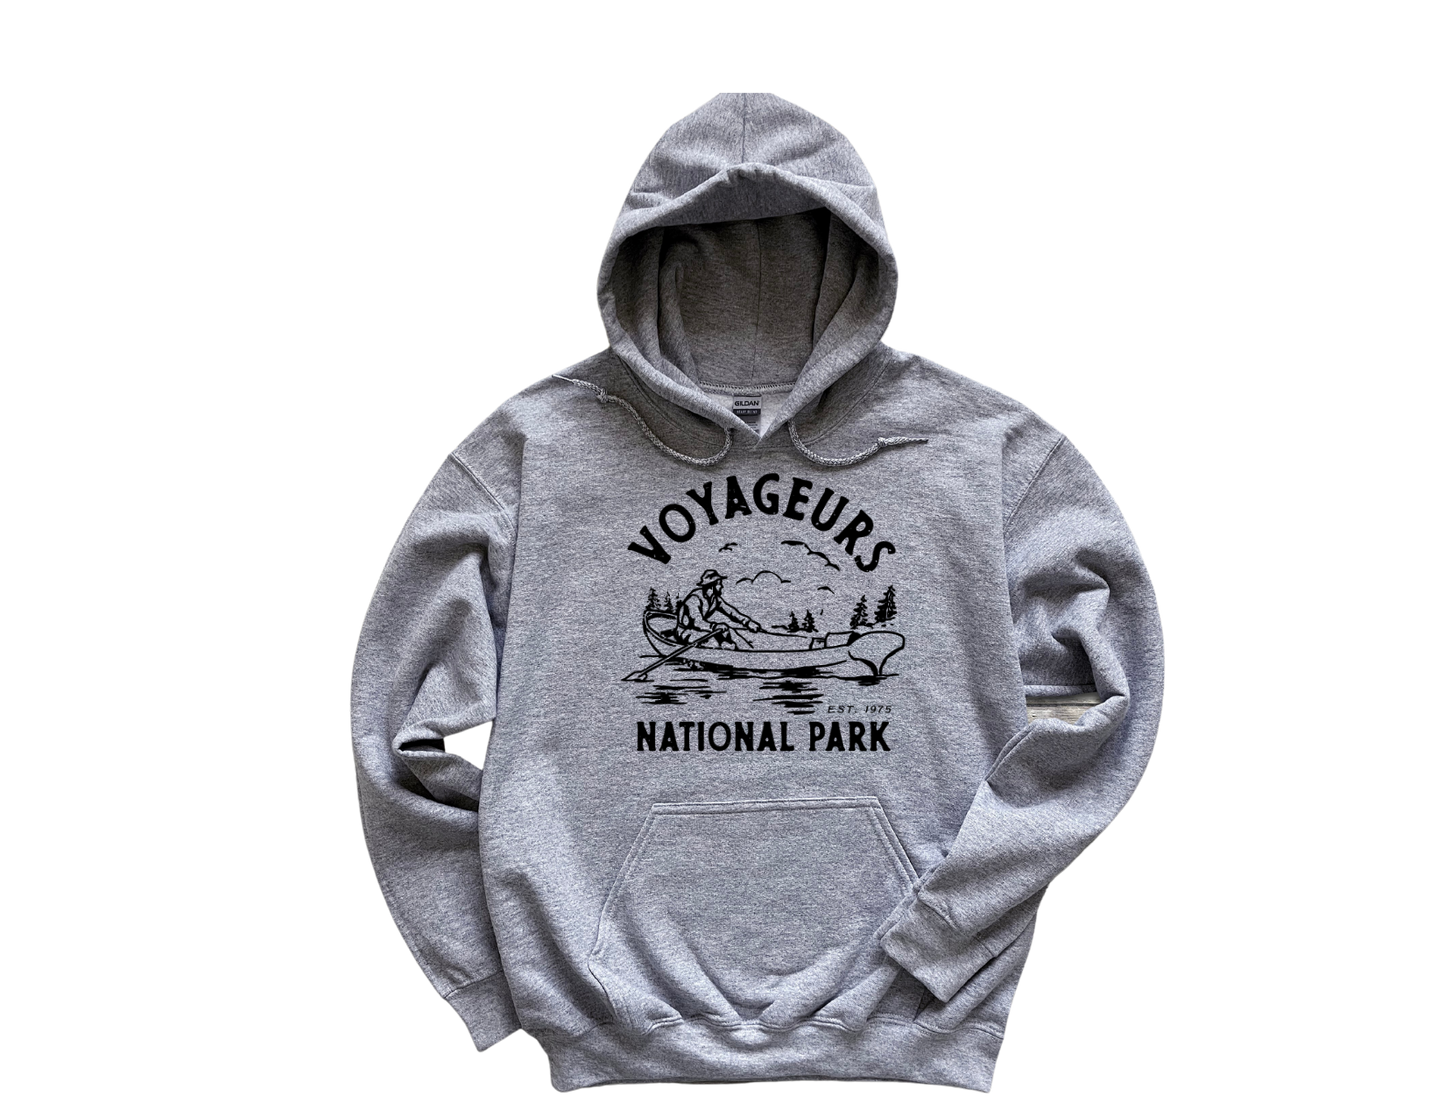 Voyageurs National Park Unisex Hoodie